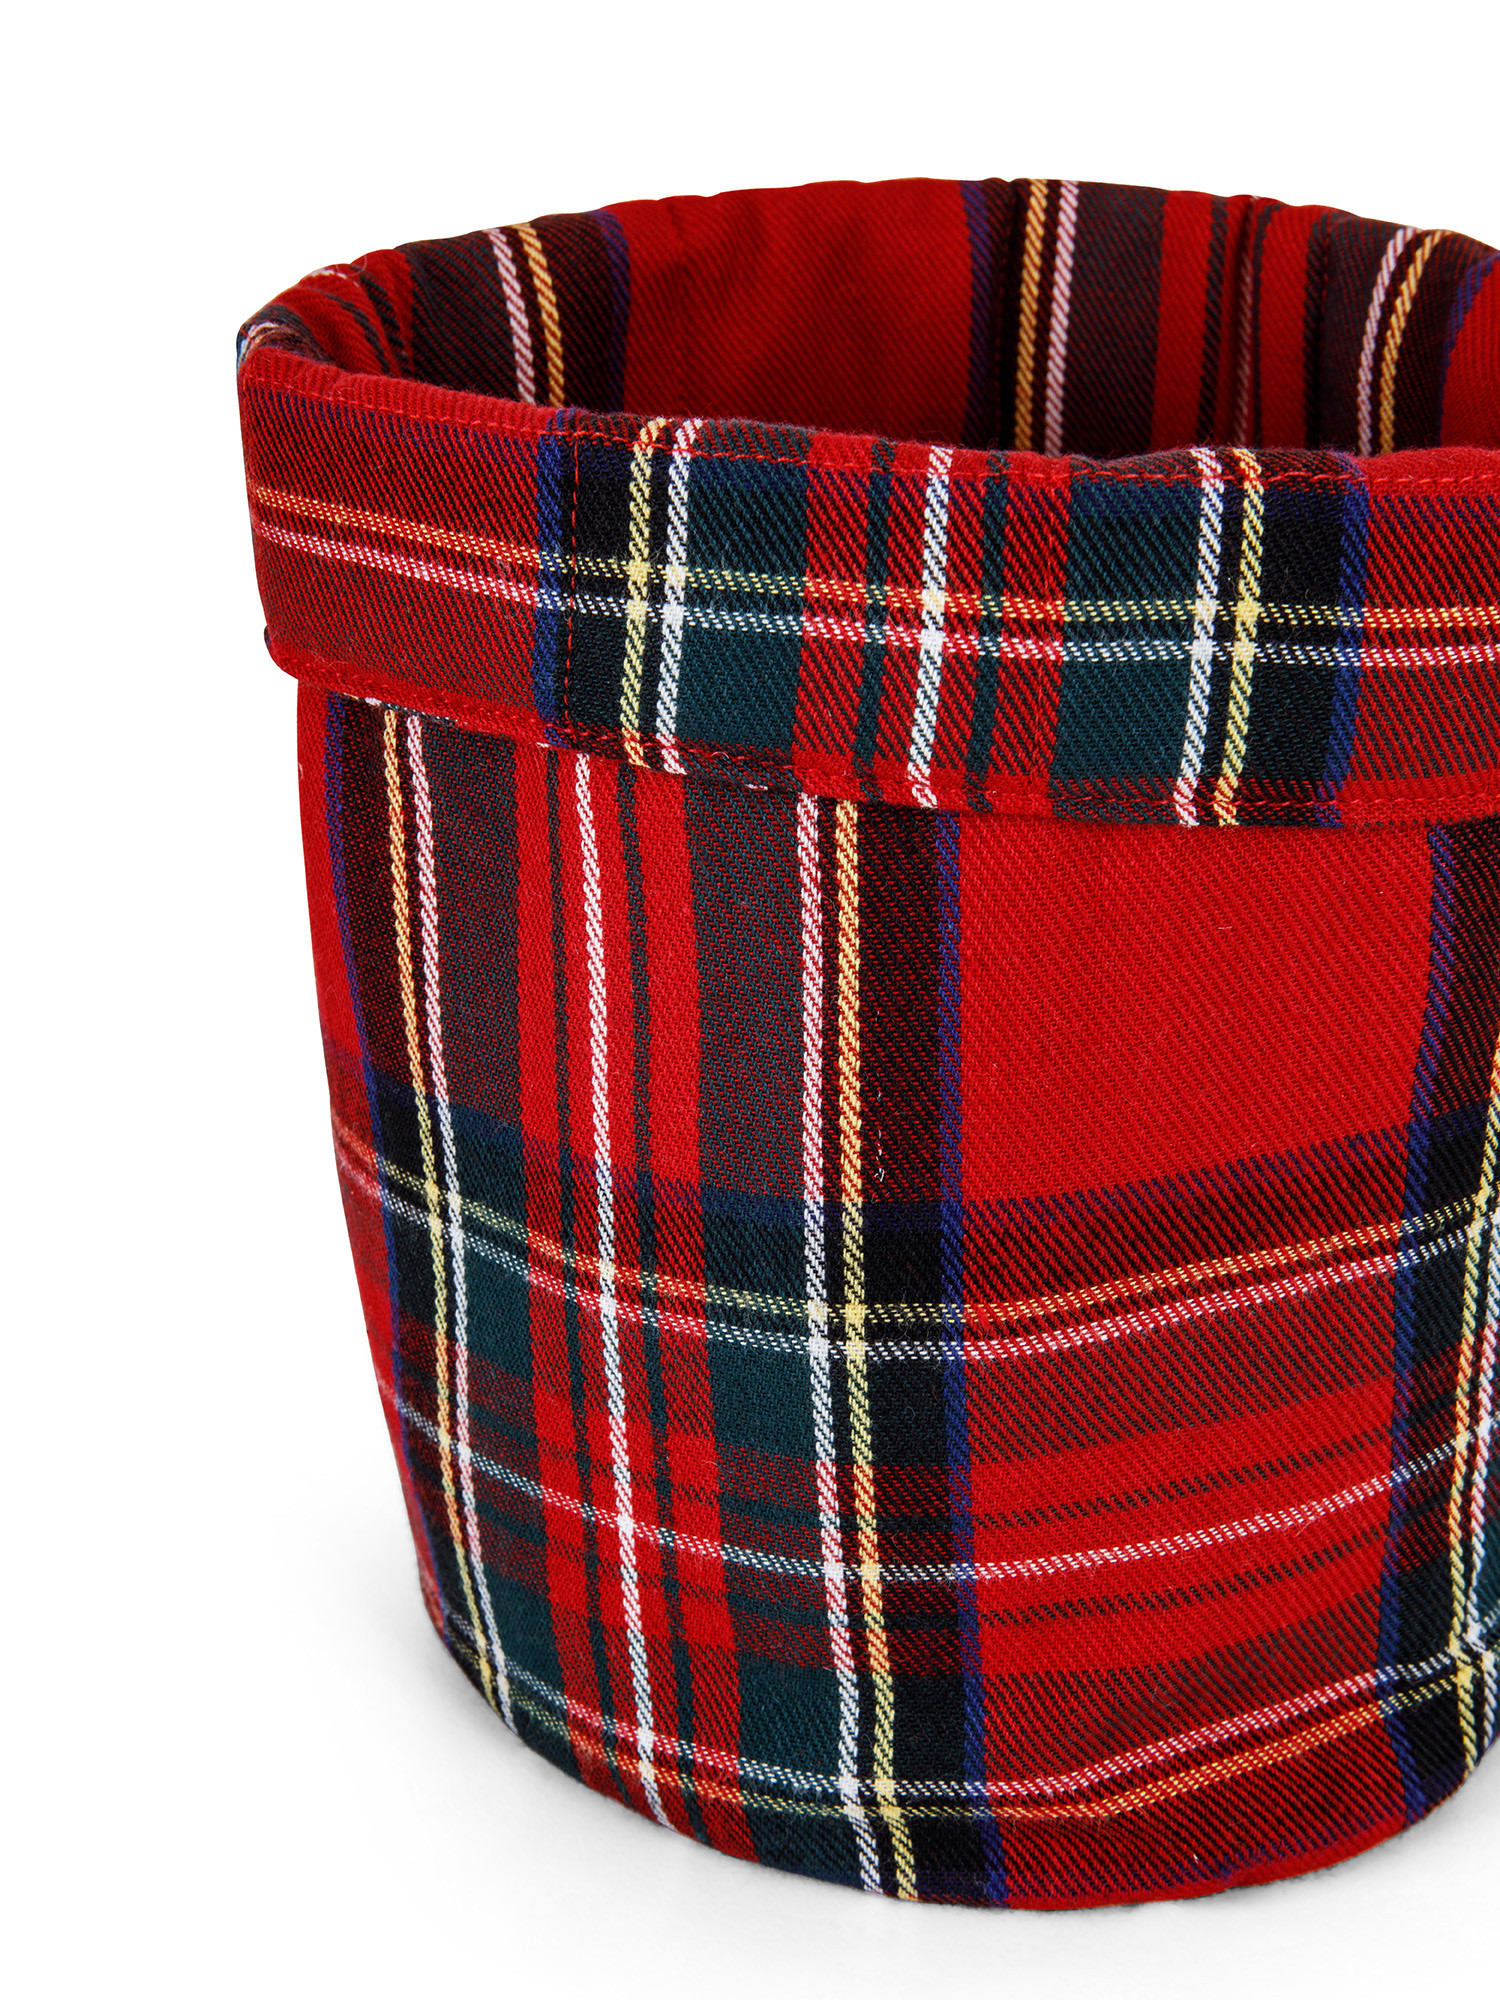 Tartan cotton twill basket, Red, large image number 1